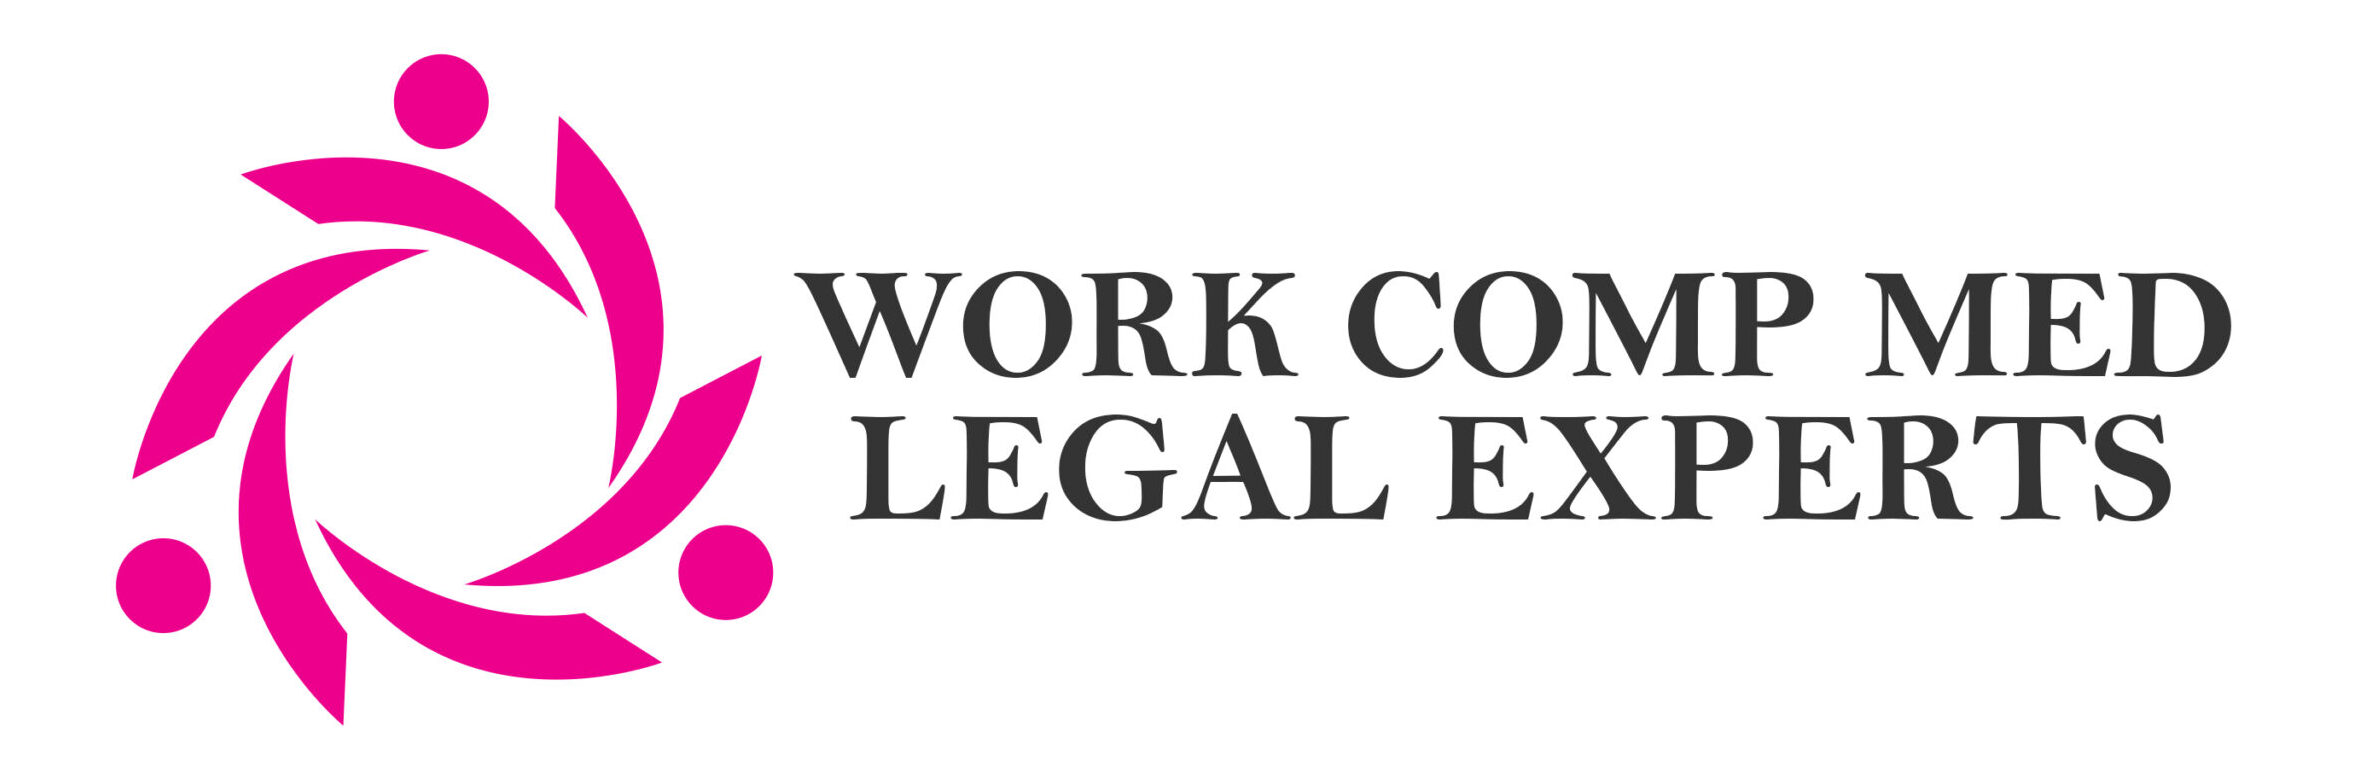 Work Comp Med Legal Experts